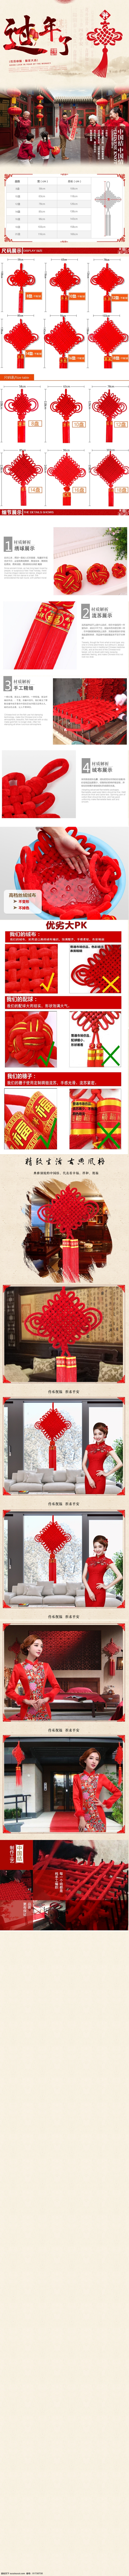 中国结 详情 中国 风 国风 淘宝素材 淘宝设计 淘宝模板下载 白色